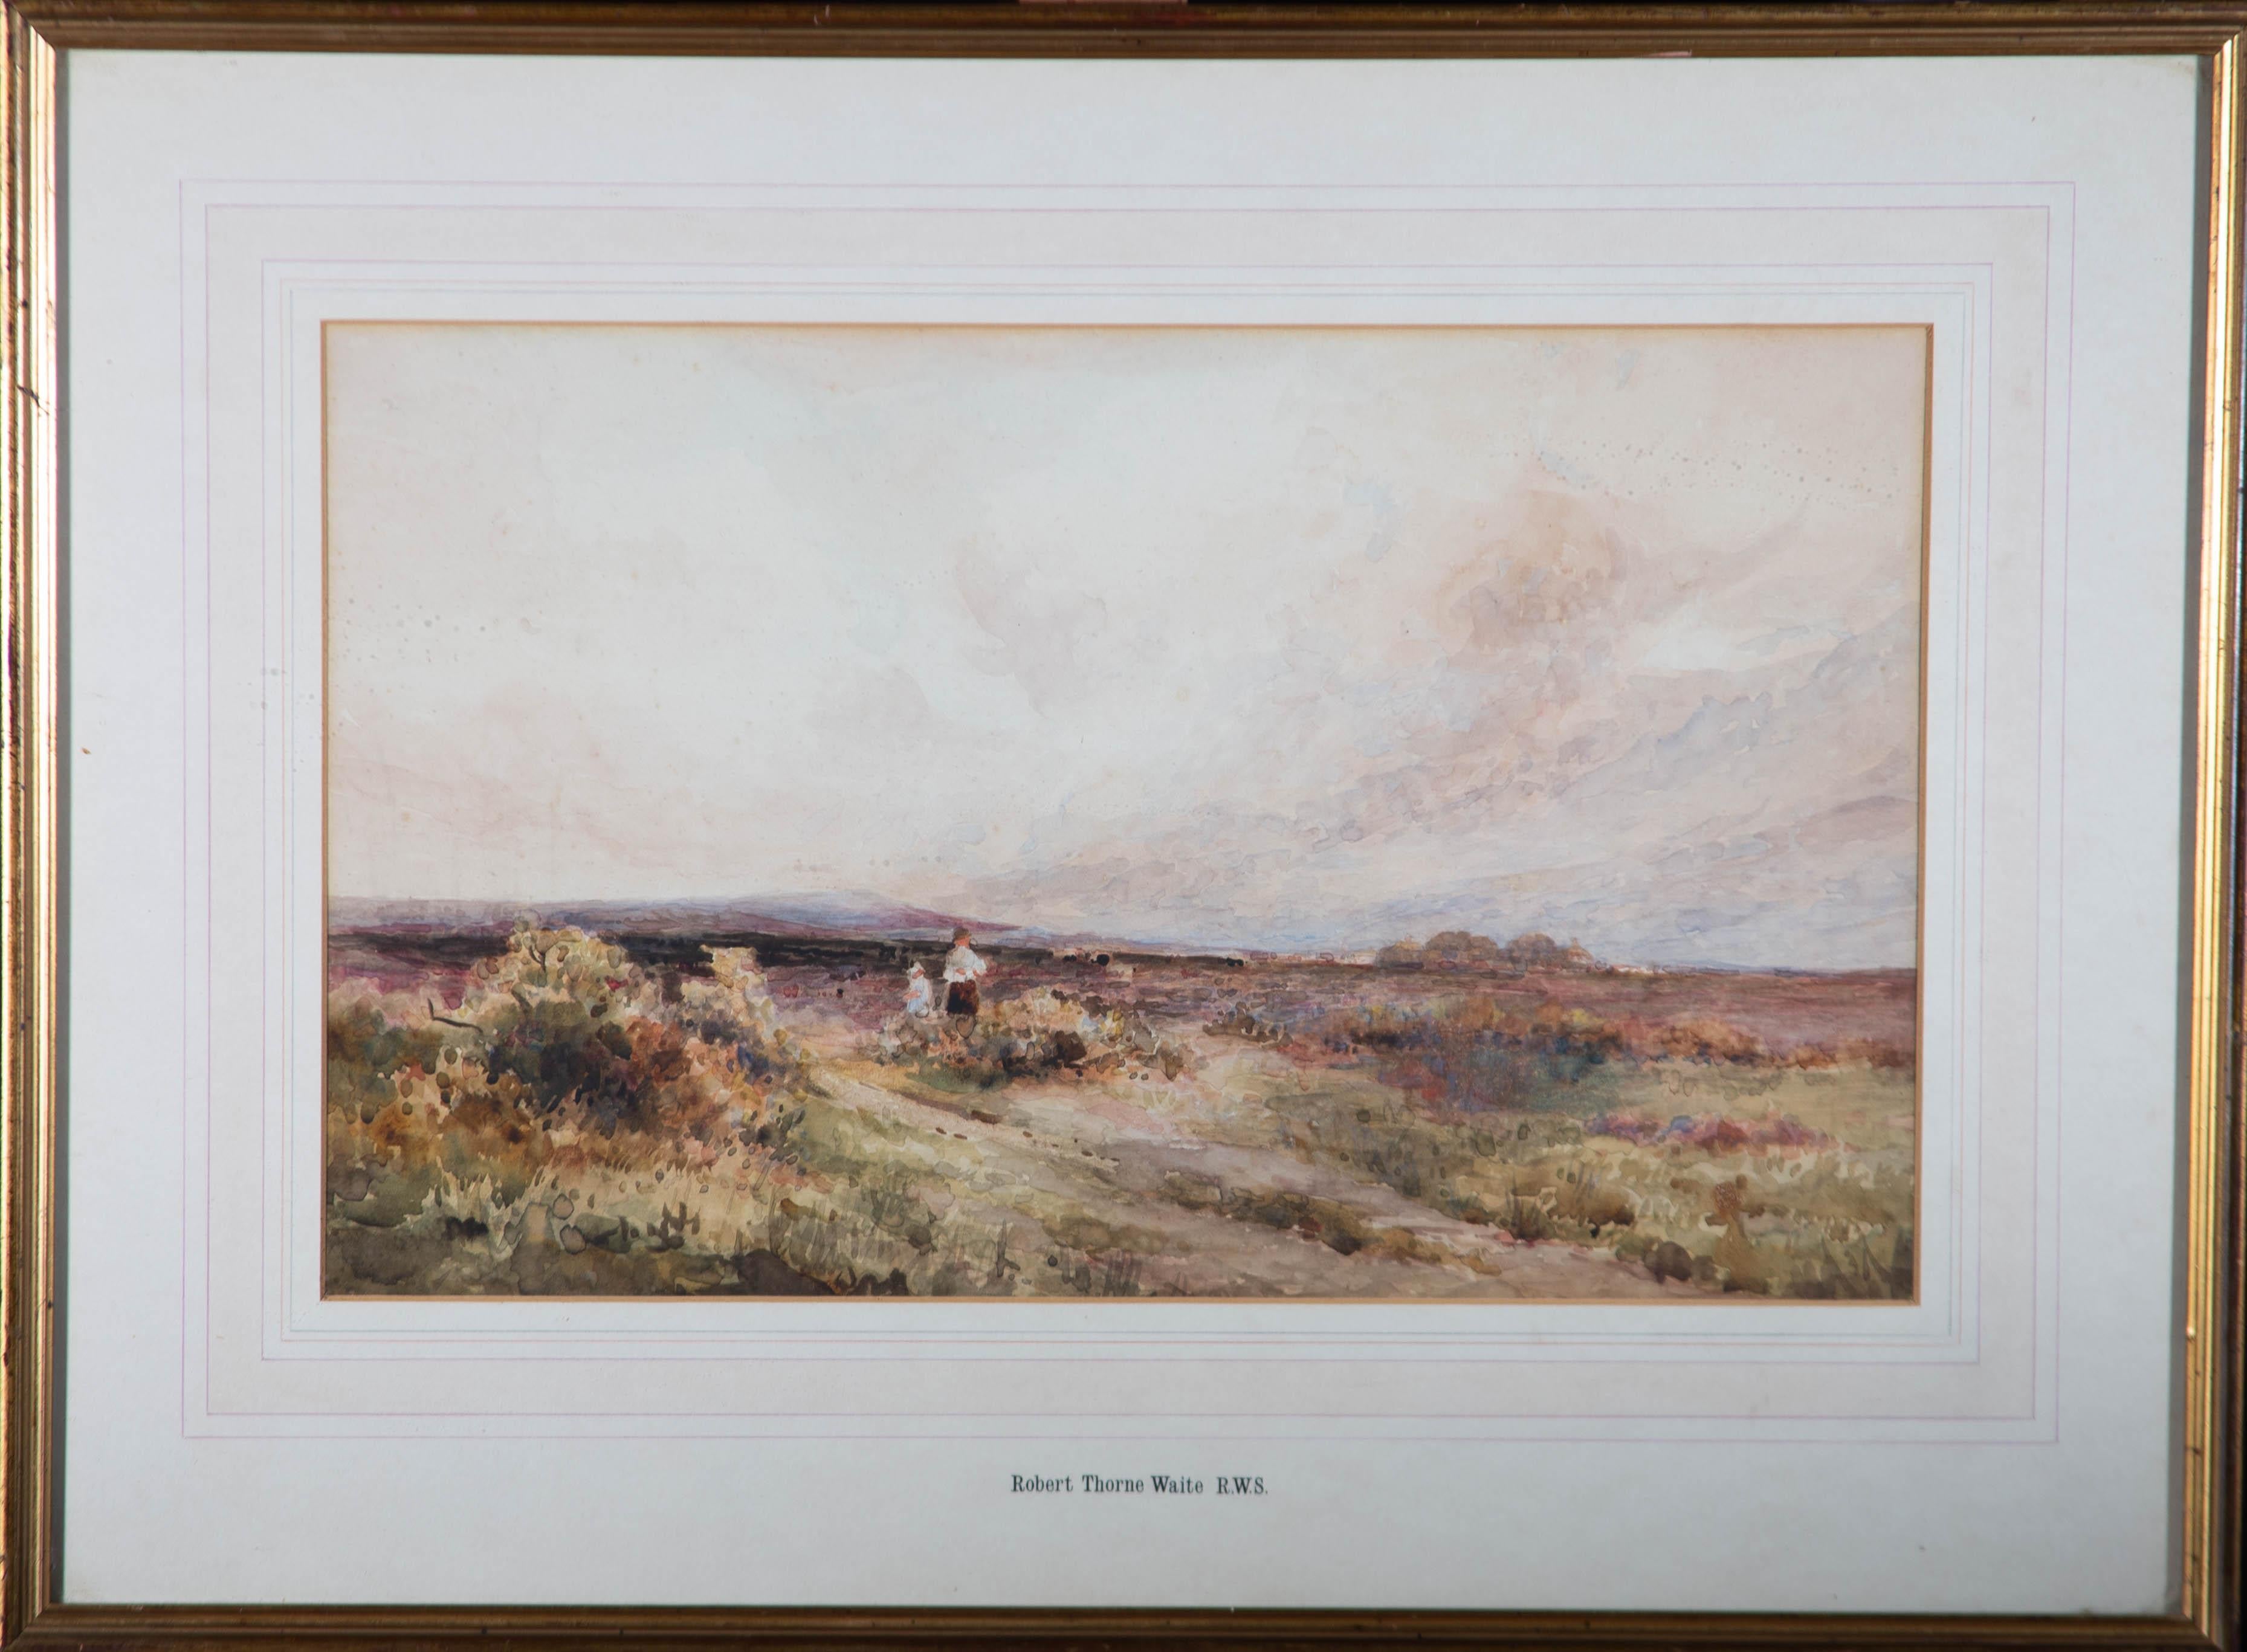 Une belle aquarelle attribuée à l'artiste britannique Robert Thorne Waite, représentant deux personnages dans un vaste paysage. Non signée. Le nom de l'artiste est inscrit sur le support dans la marge inférieure. Bien présenté dans un montage de